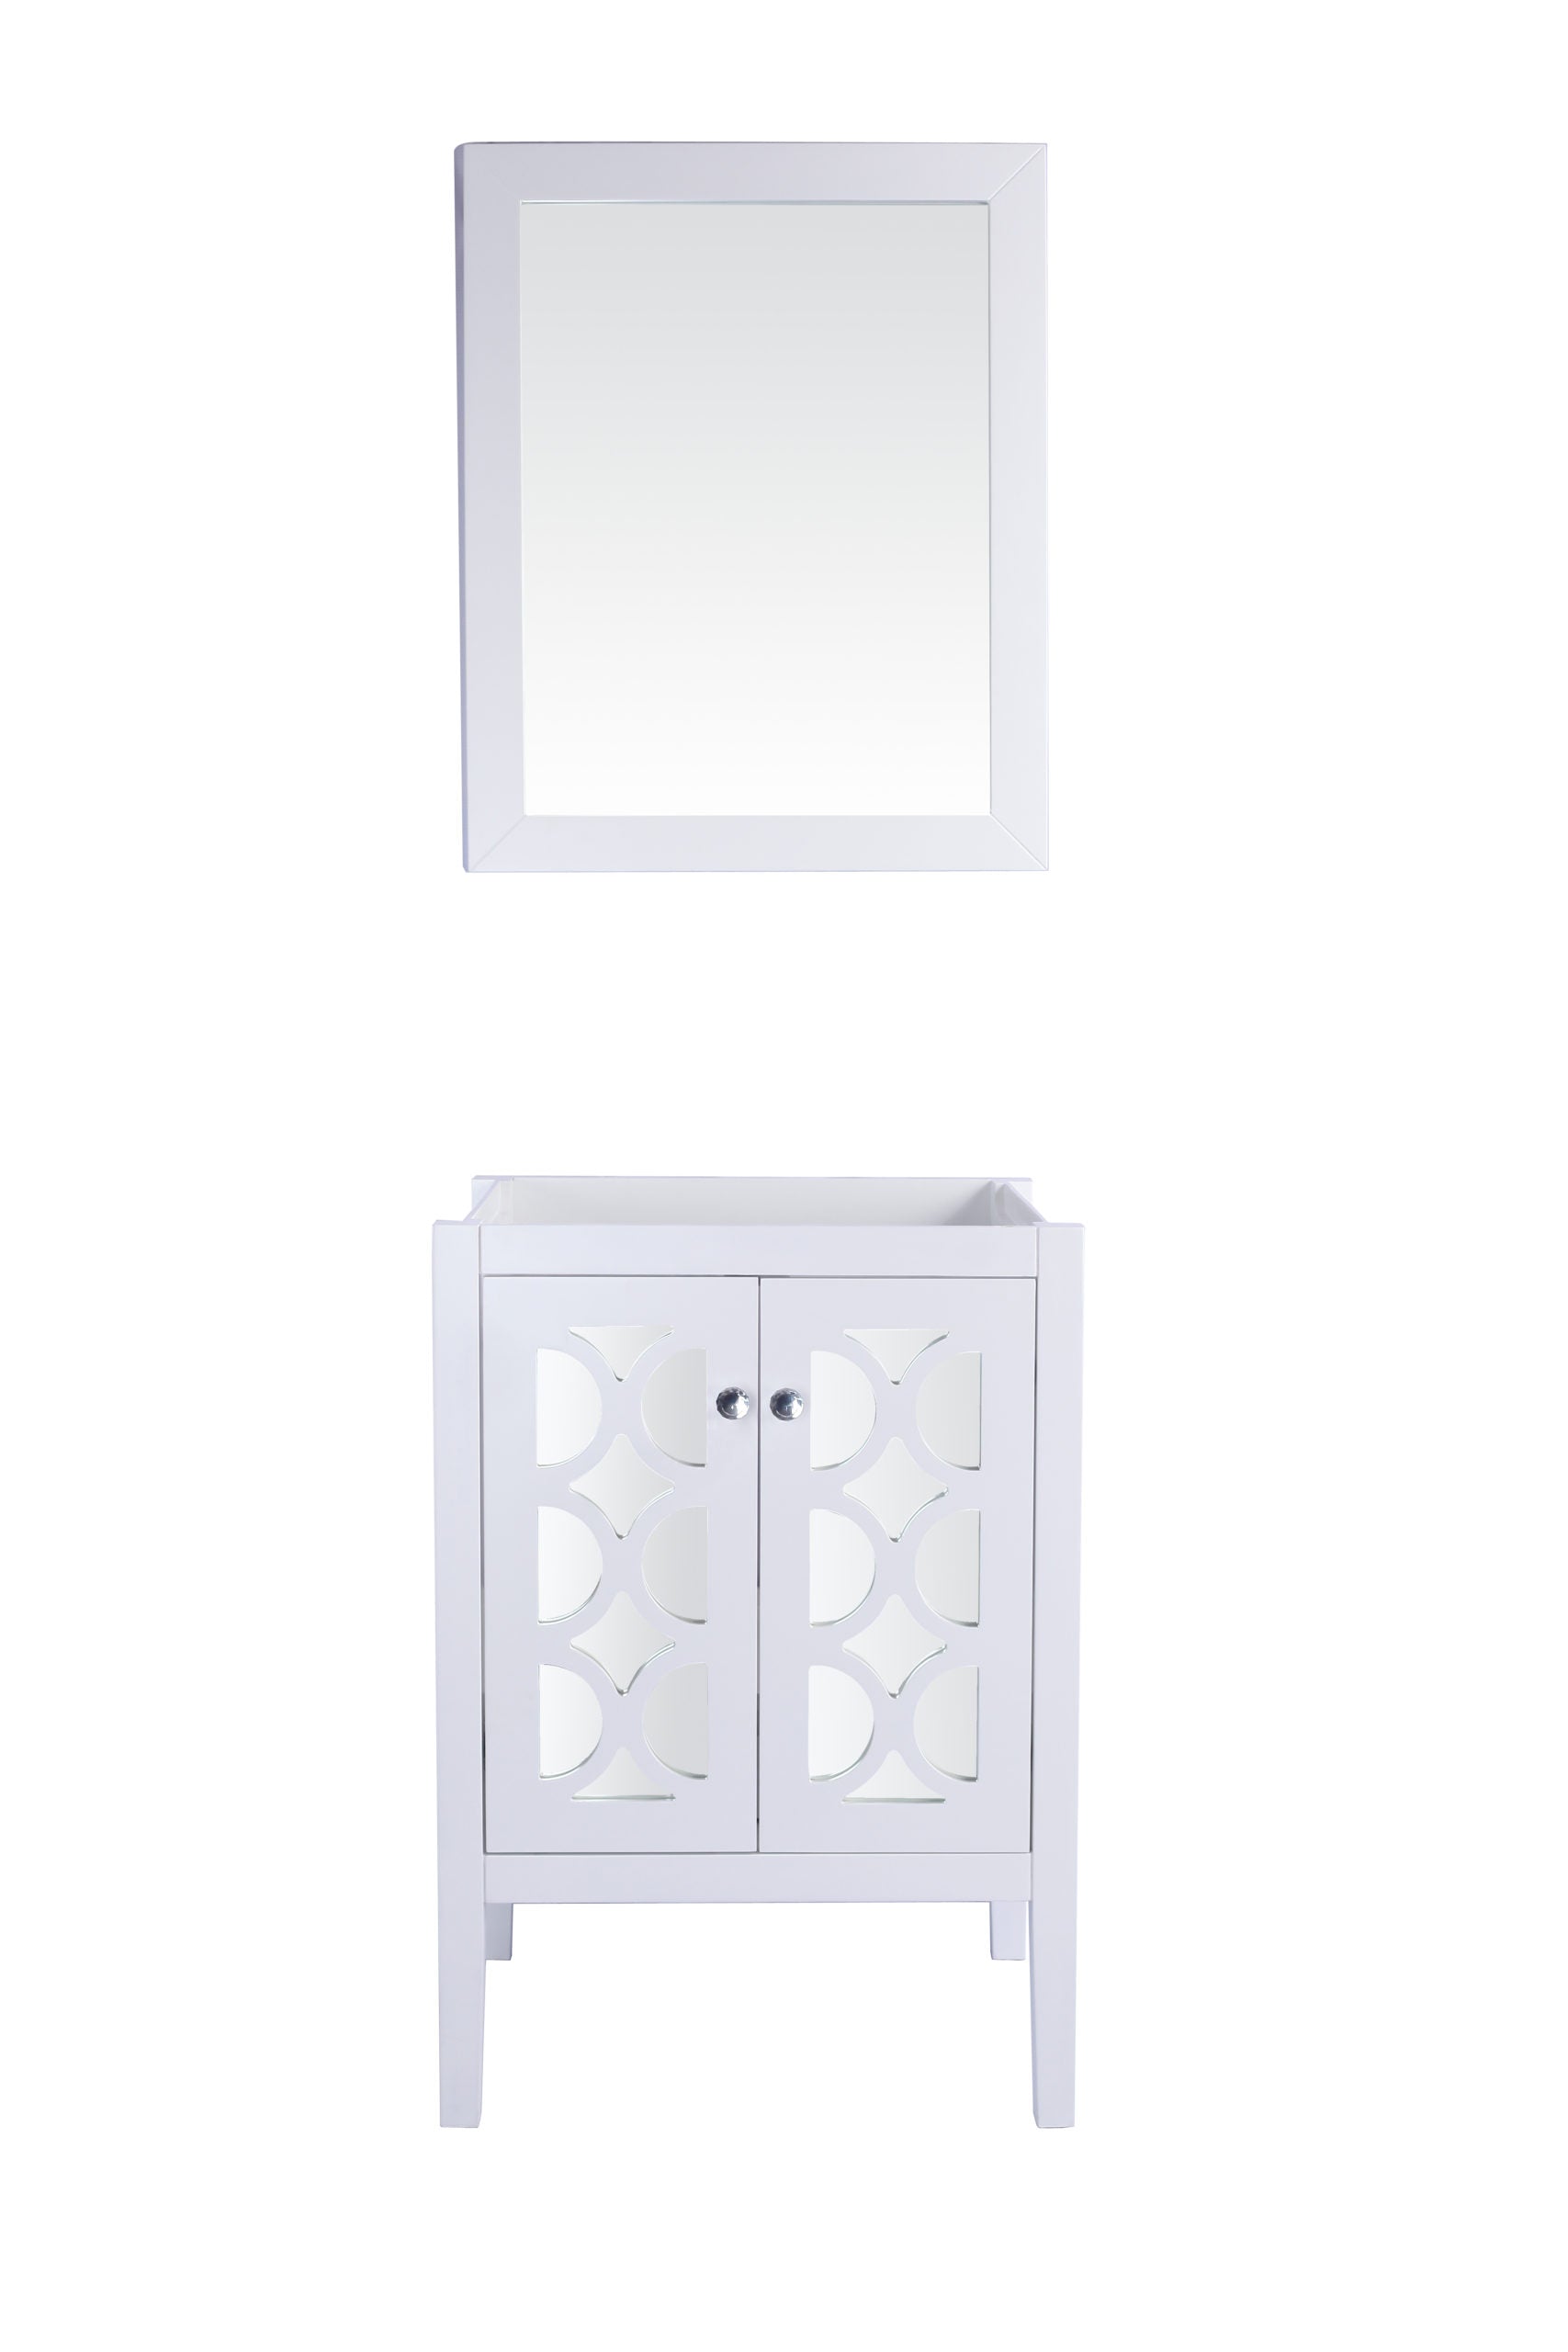 Laviva Mediterraneo 24" Gray Bathroom Vanity Cabinet | 313MKSH-24